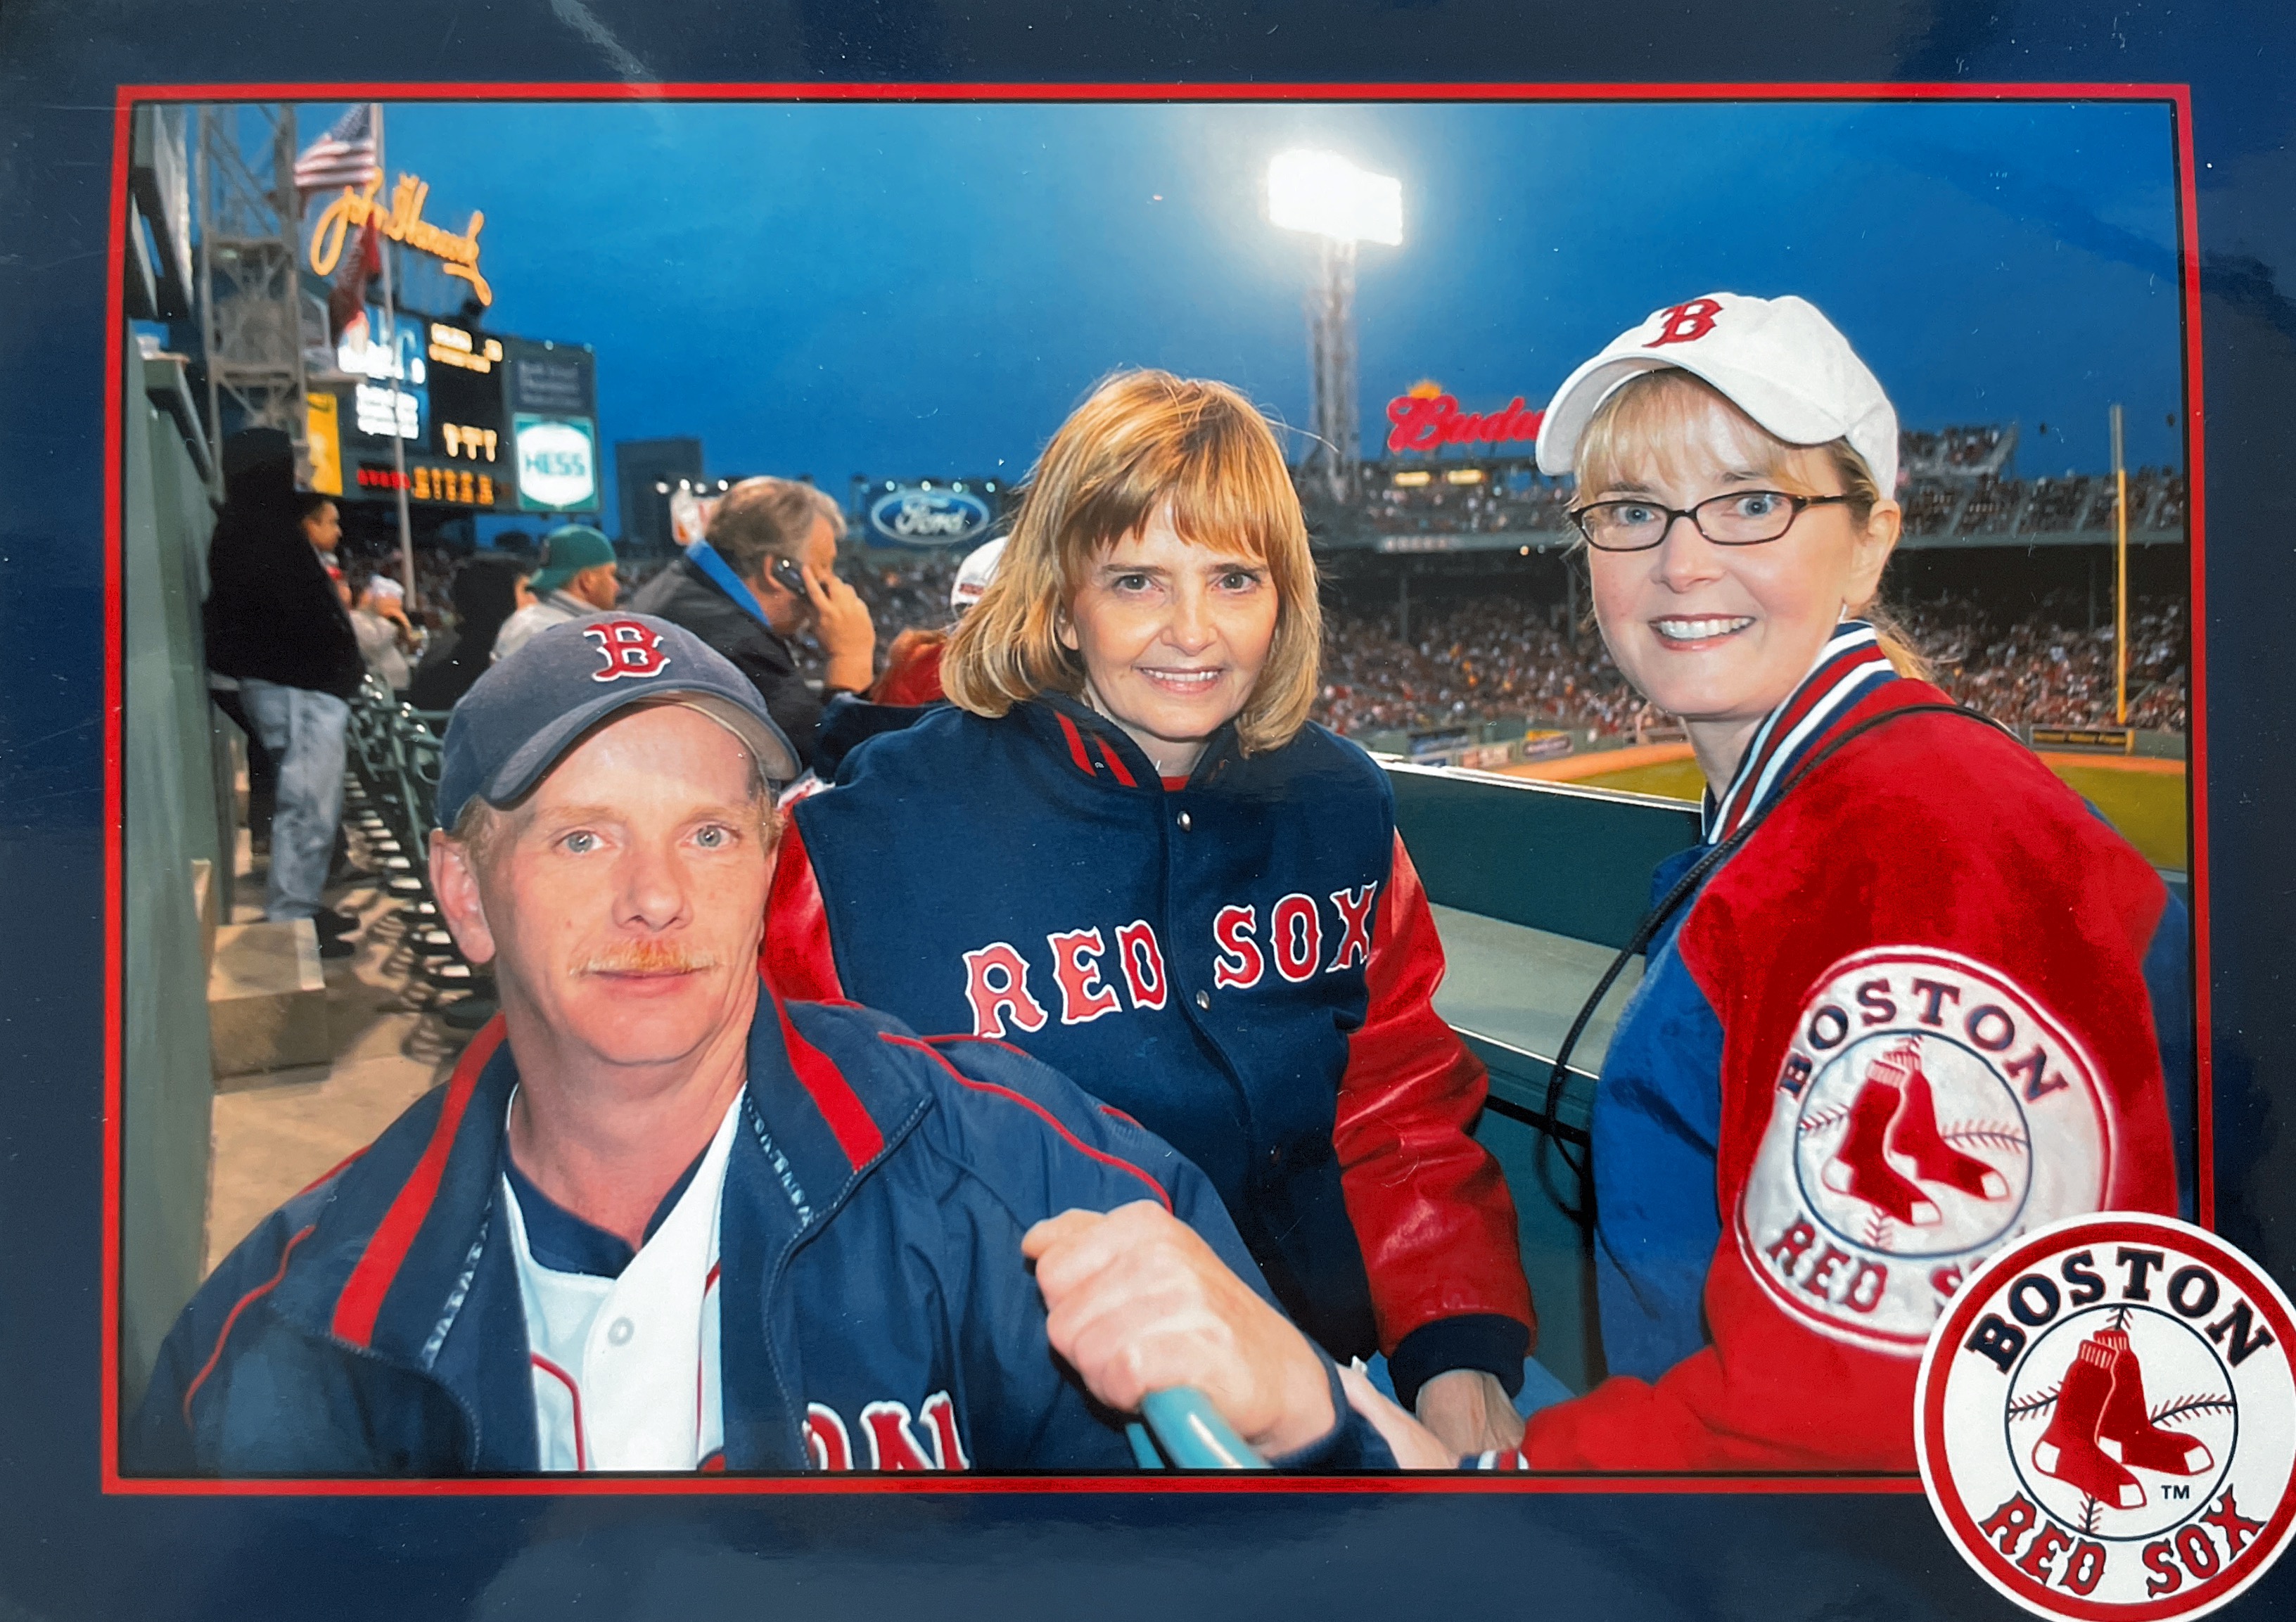 Red Sox Game May 22, 2018 Karl, Debbie and Darlene